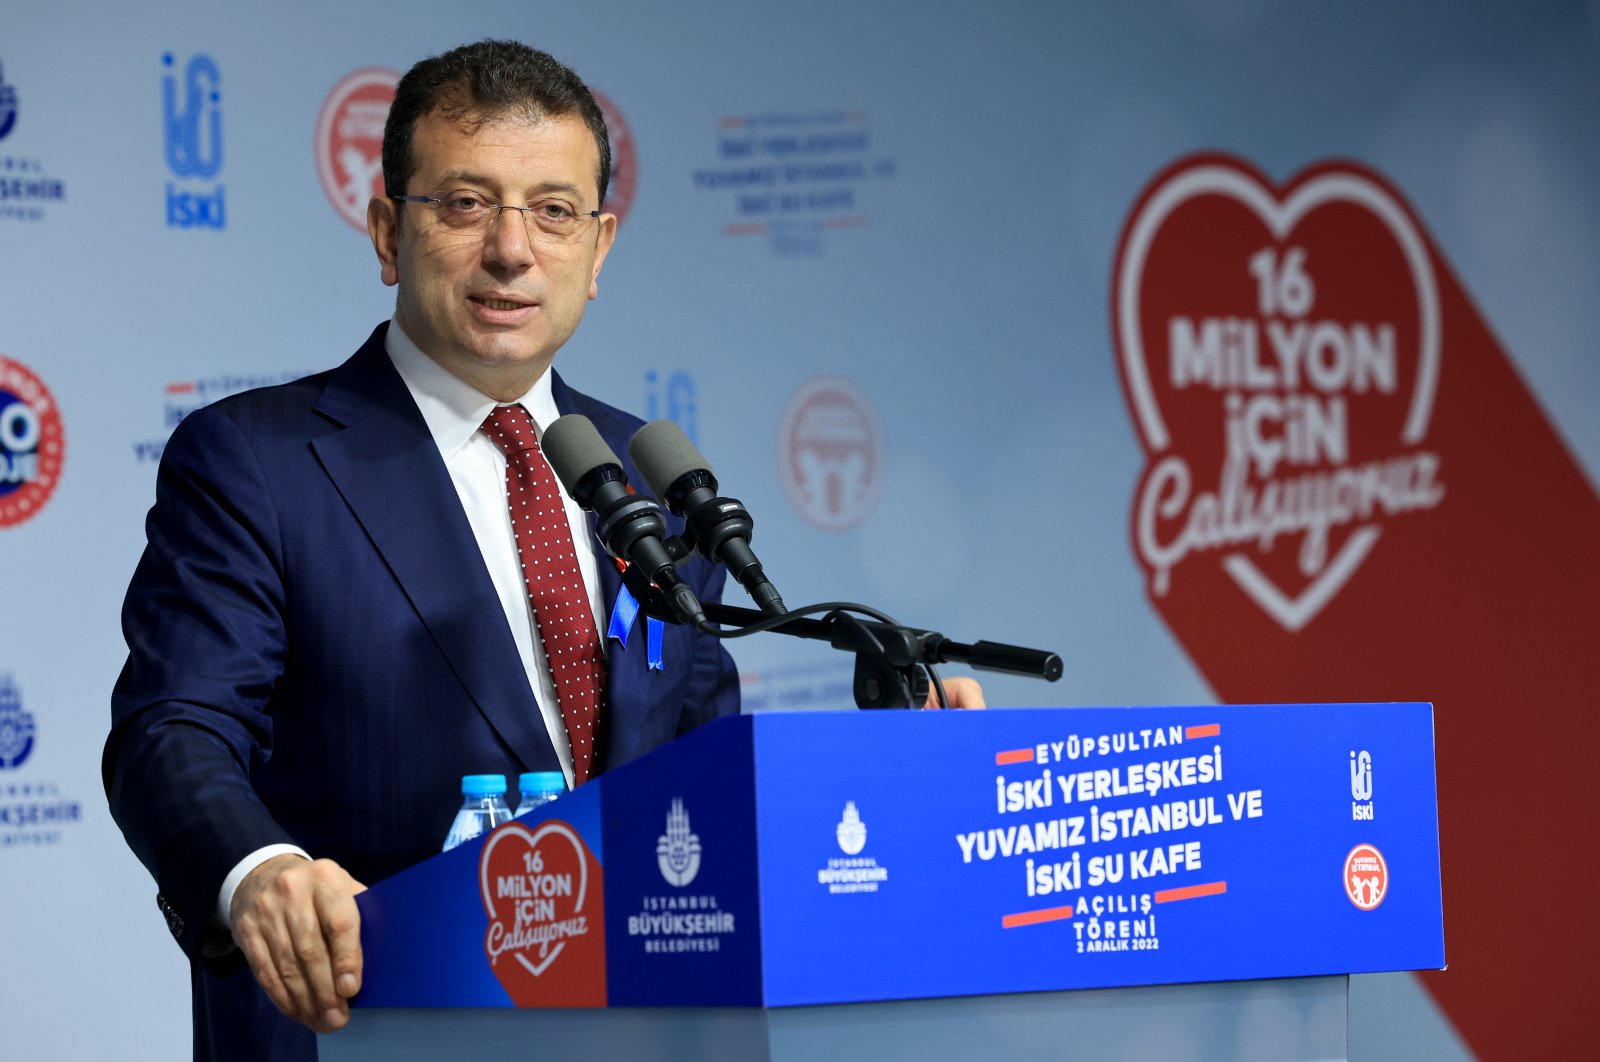 Walikota Istanbul Imamoğlu menerima hukuman penjara karena menghina YSK